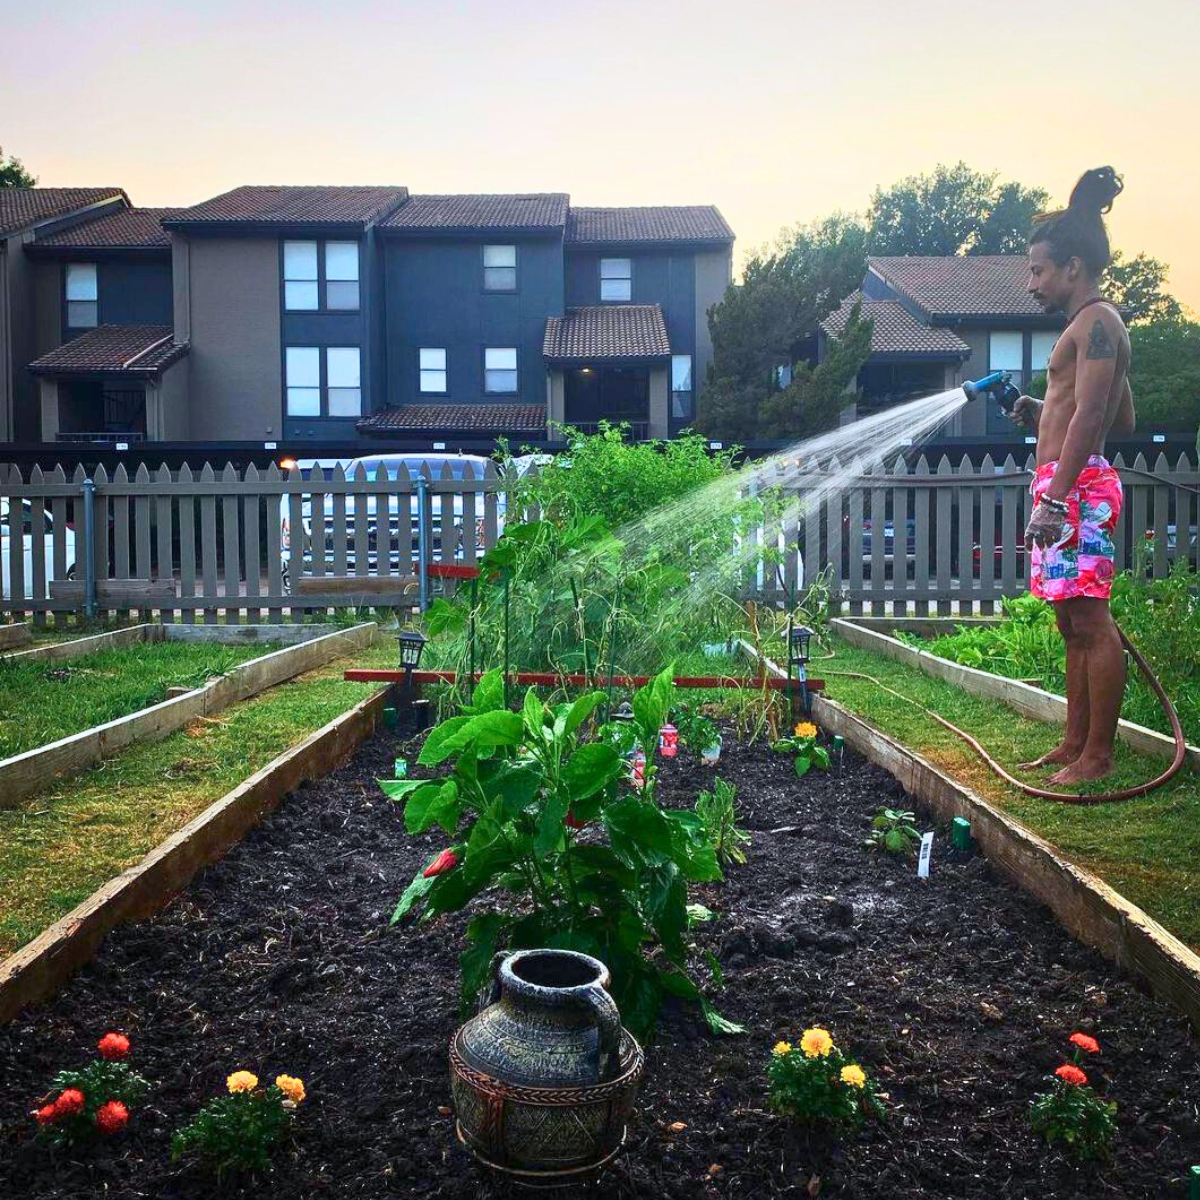 Watering an outdoor garden